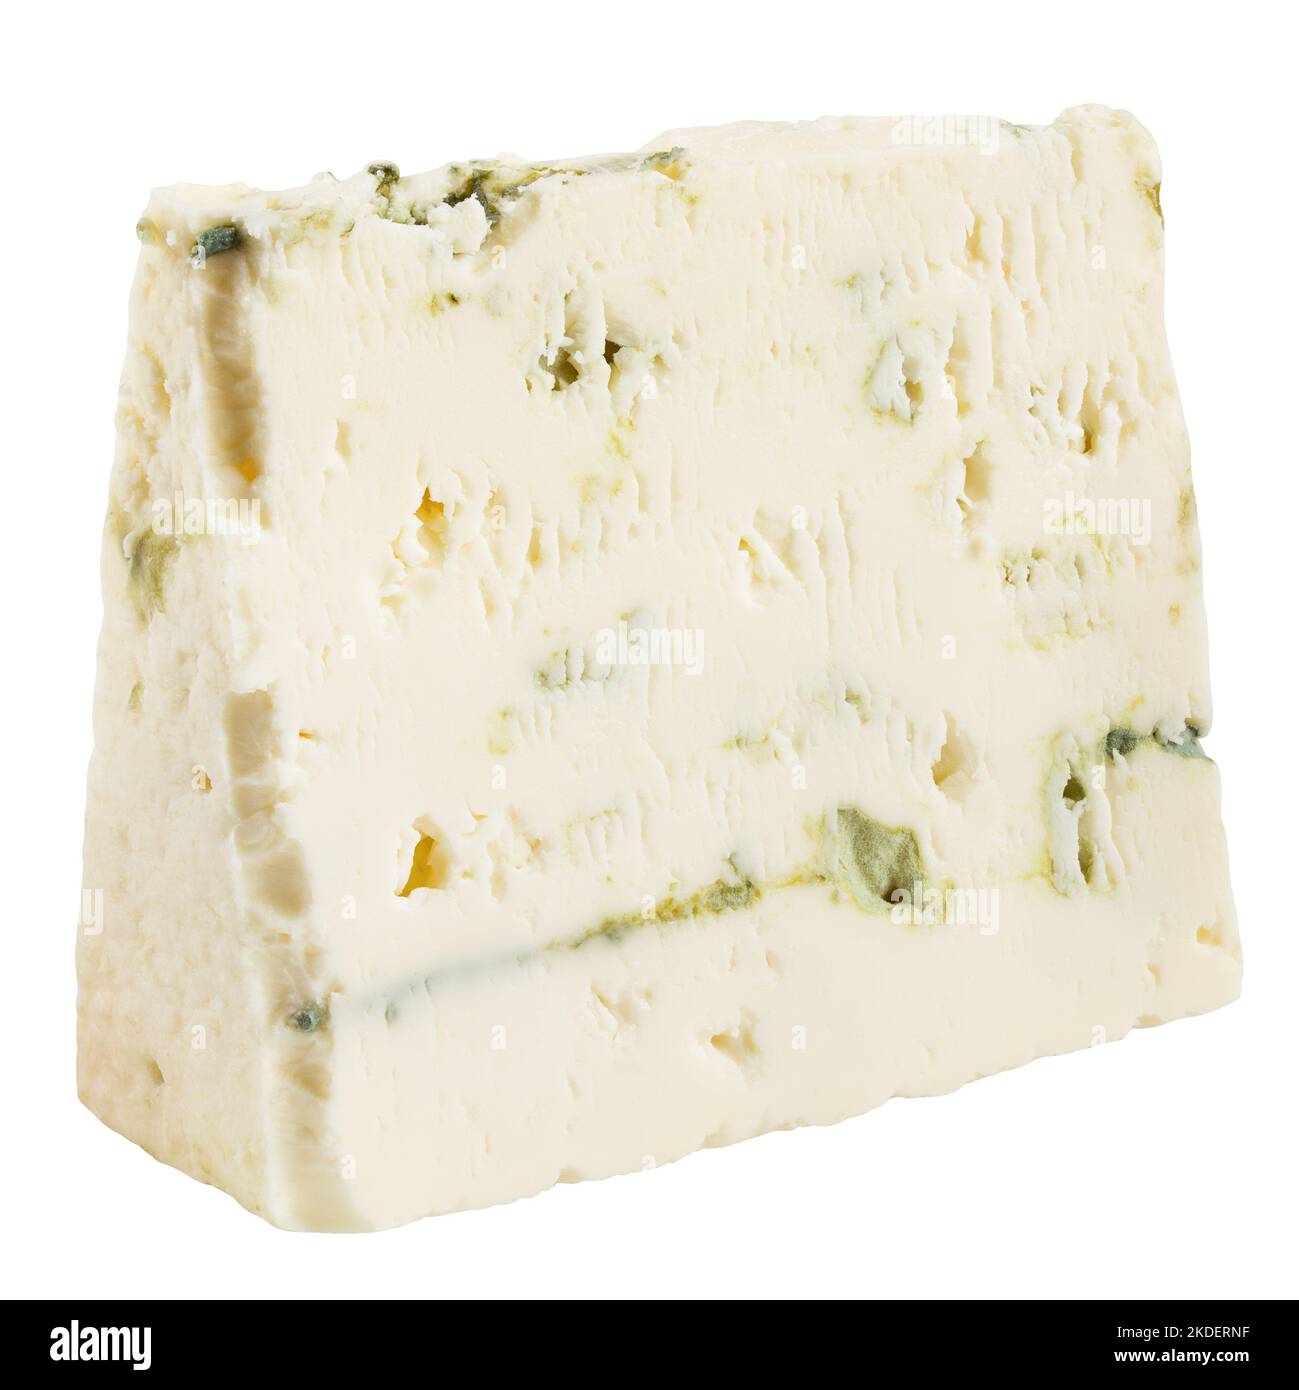 fromage bleu, isolé sur fond blanc, passe de découpe, profondeur de champ totale Banque D'Images